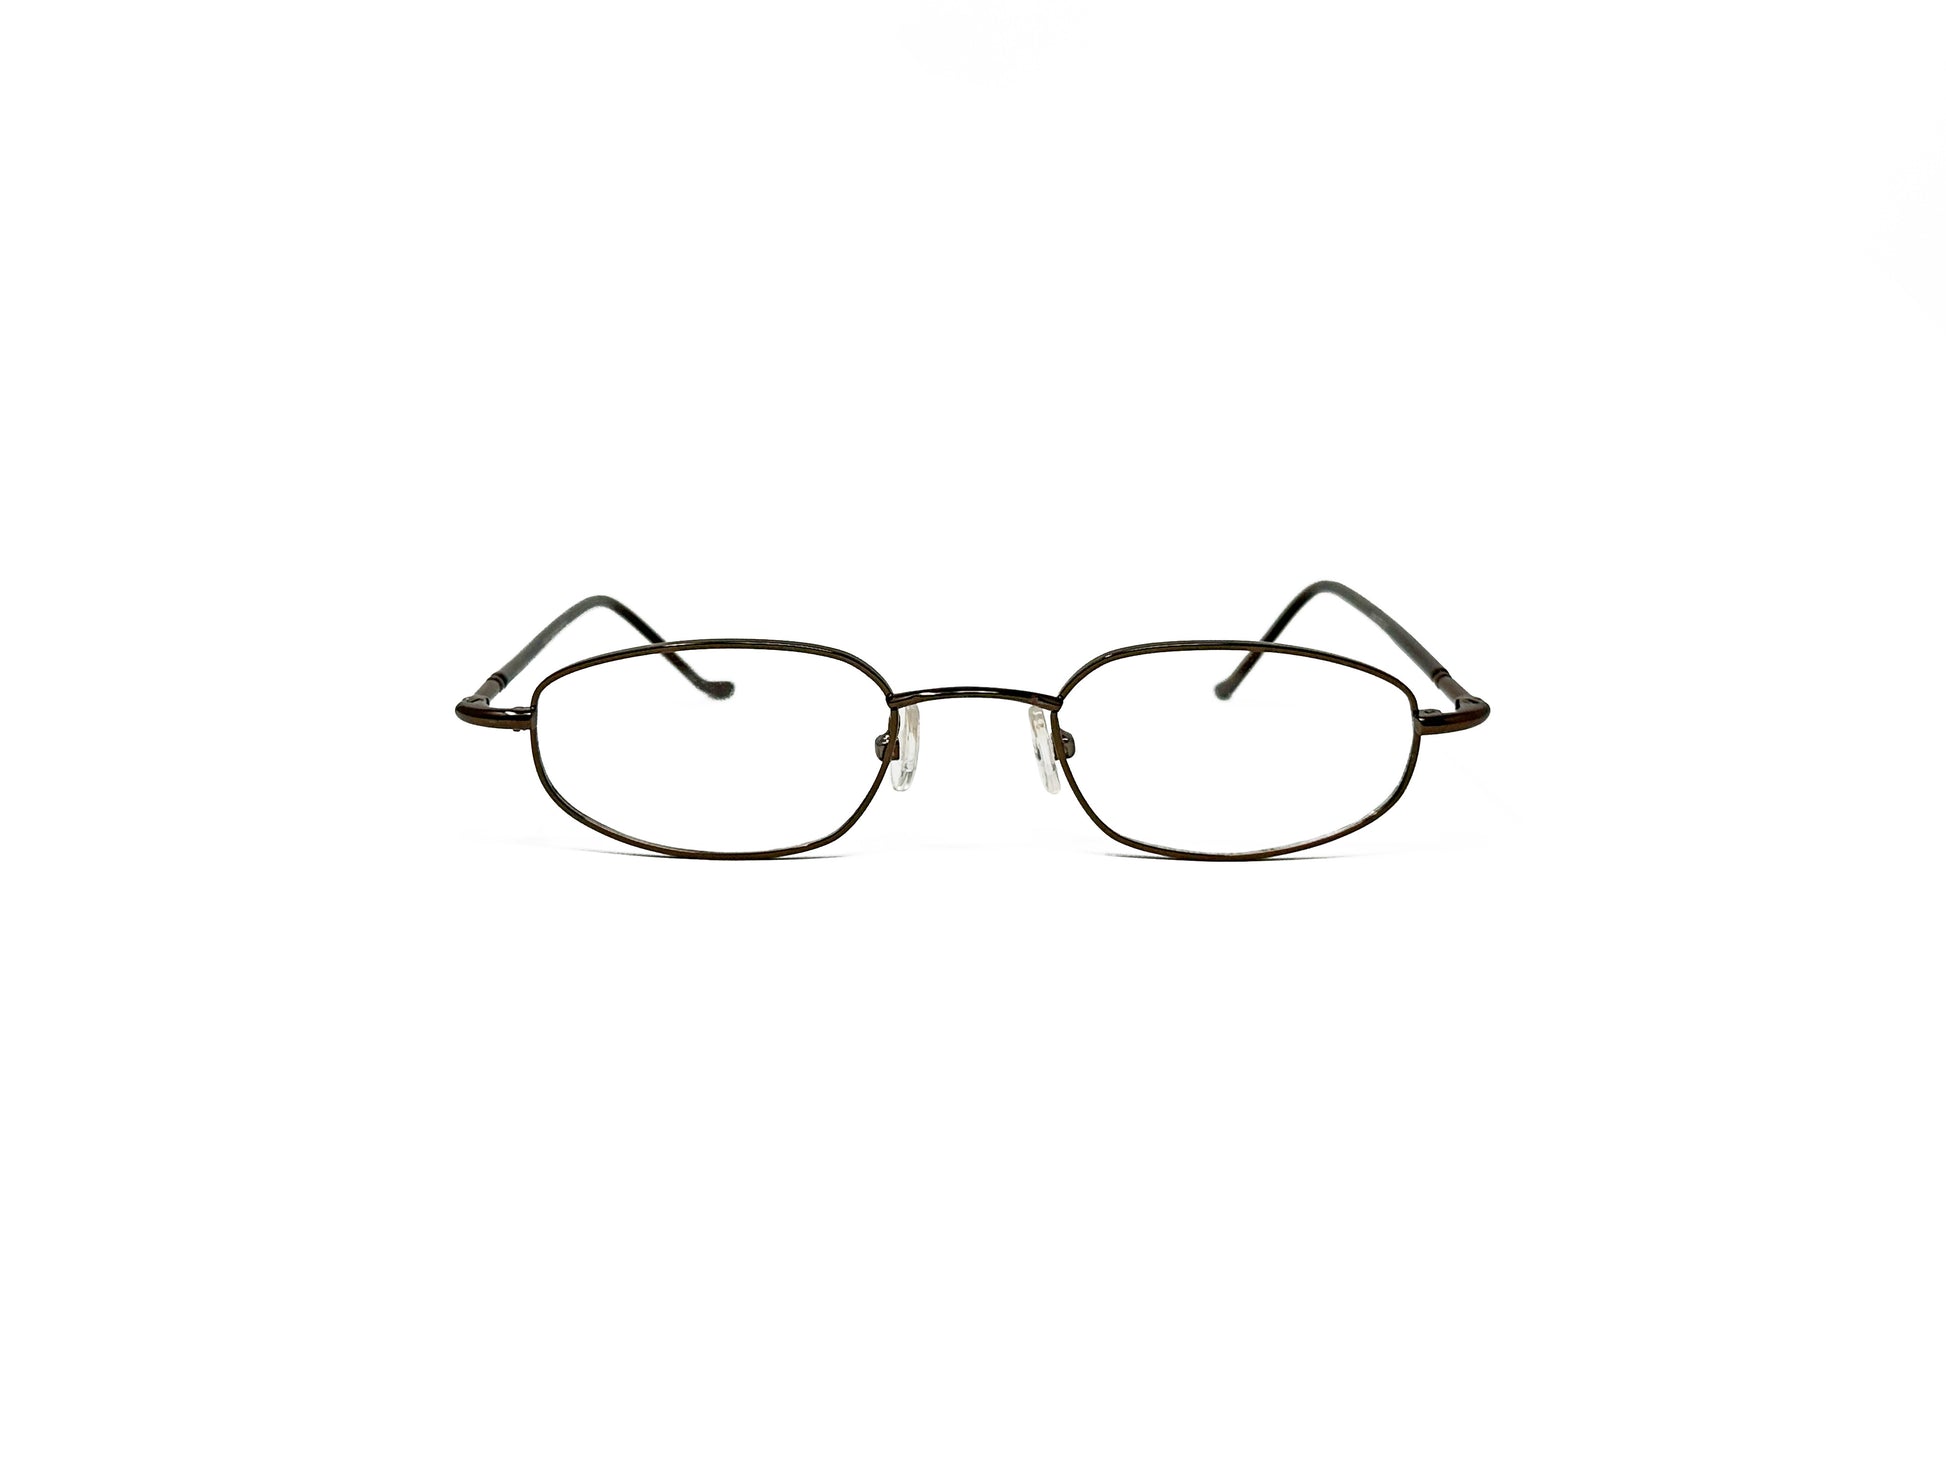 Spektek Eyewear angled oval optical frame. Model: 0537. Color: Brown. Front view. 